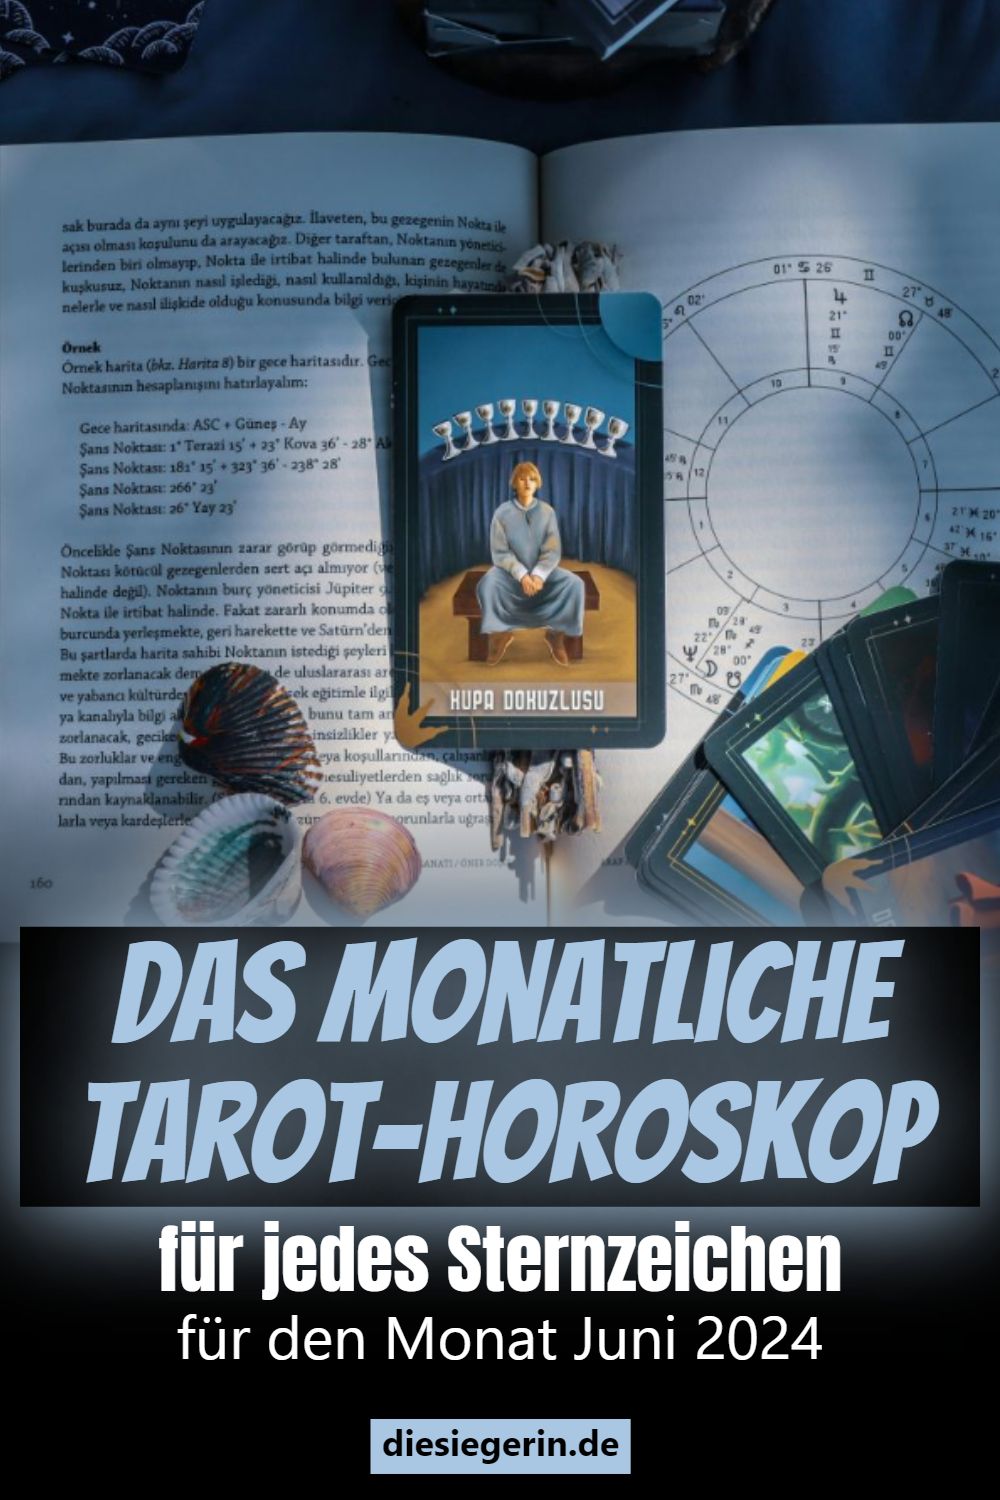 Das monatliche Tarot-Horoskop für jedes Sternzeichen für den Monat Juni 2024